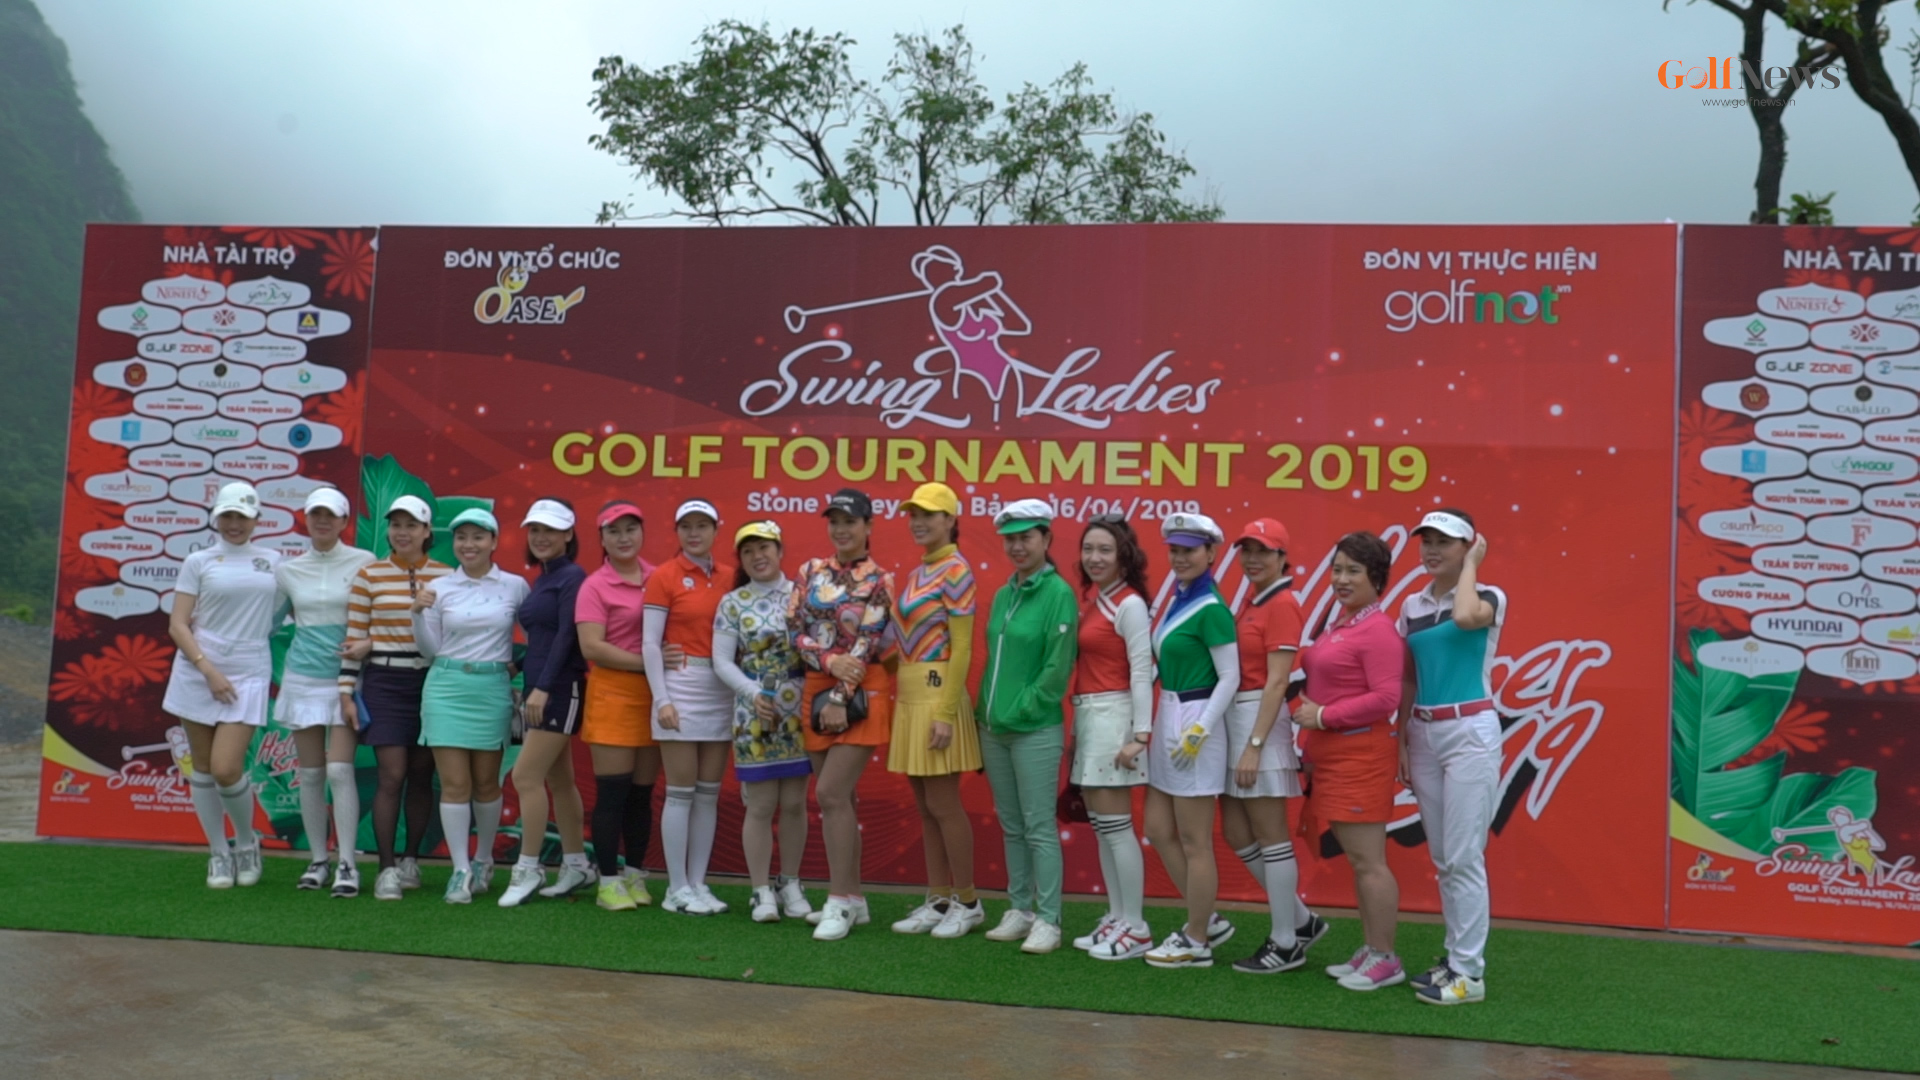 Swing Ladies Golf Tournament 2019: Giải golf dành cho các cặp đôi hoàn hảo